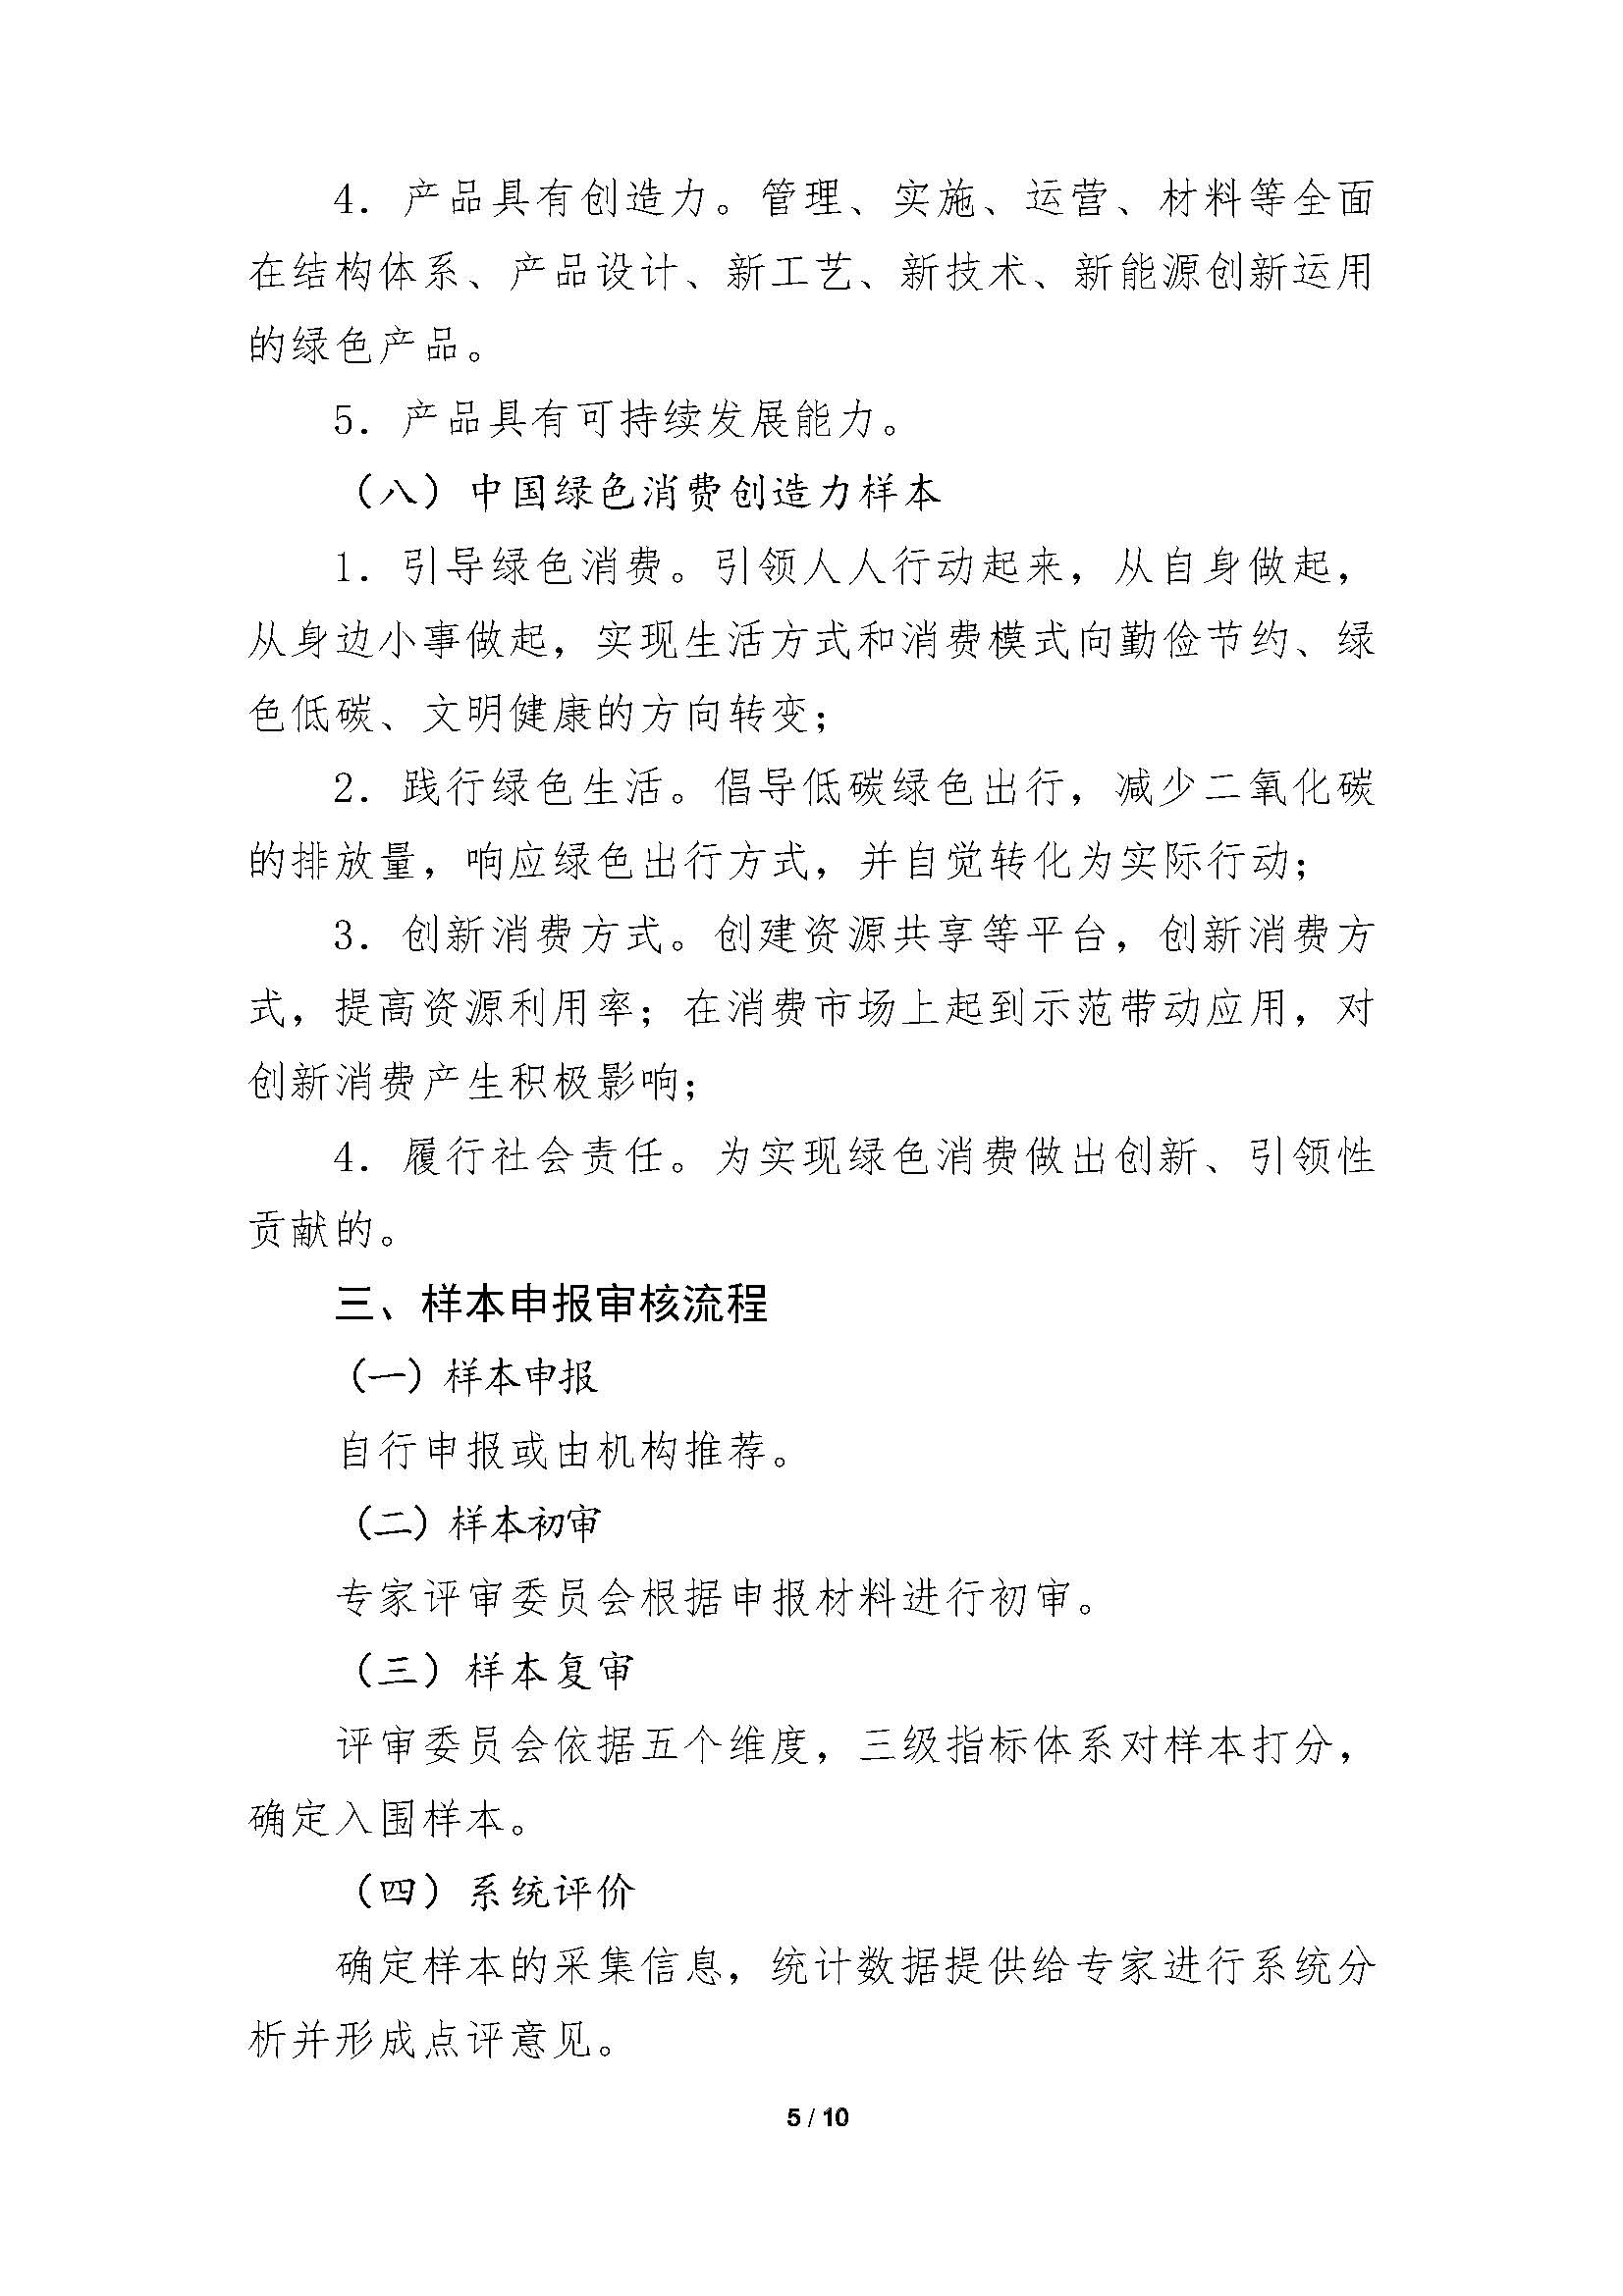 中国绿色创造力样本”的通知_页面_05.jpg